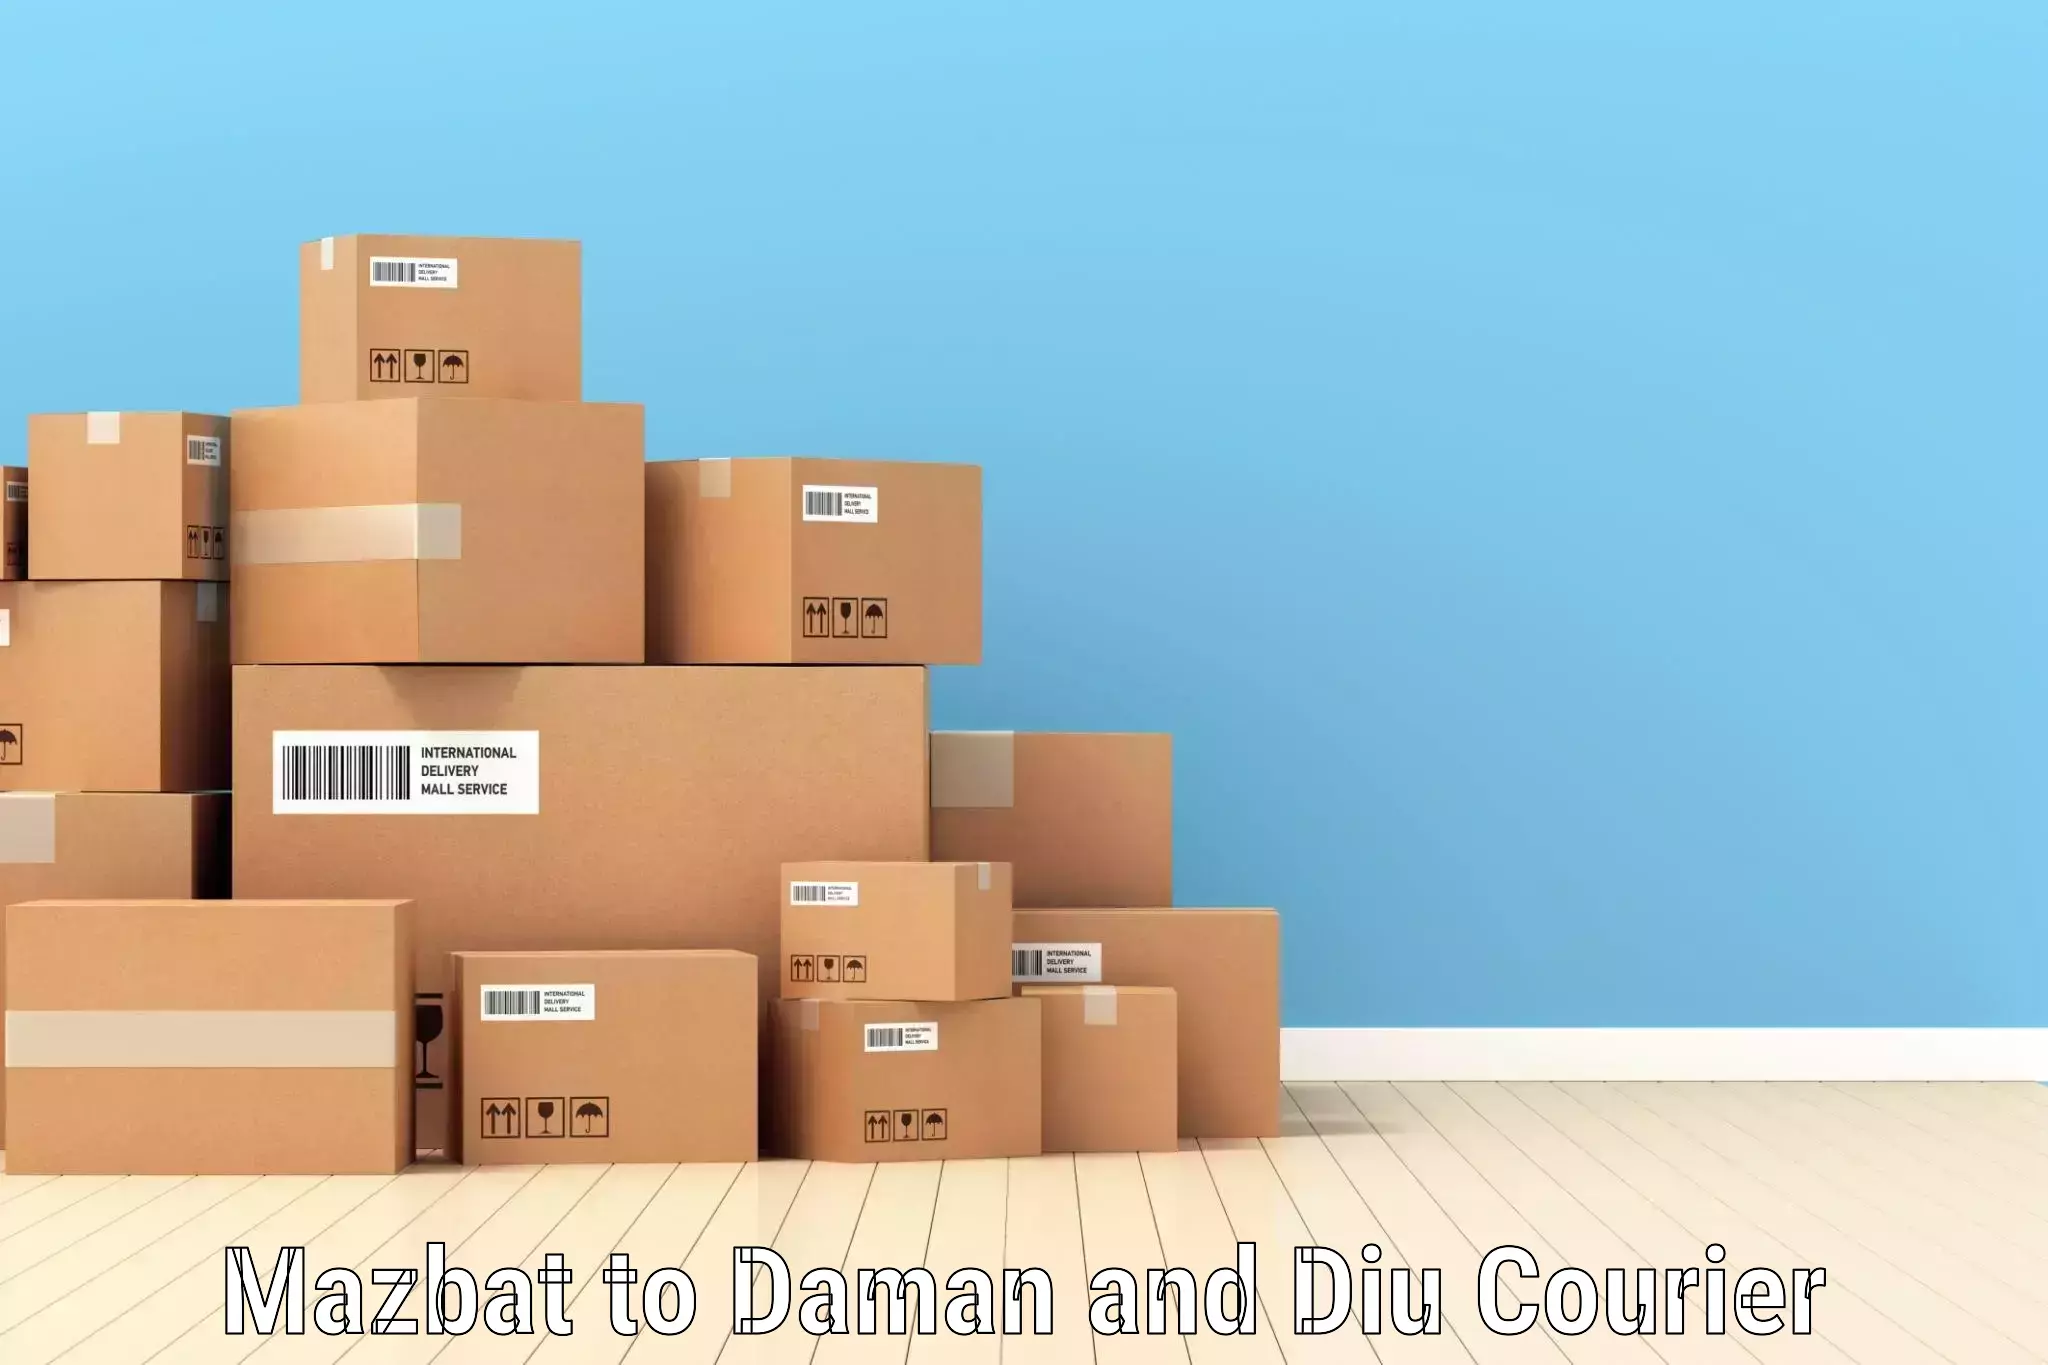 Efficient parcel tracking Mazbat to Daman